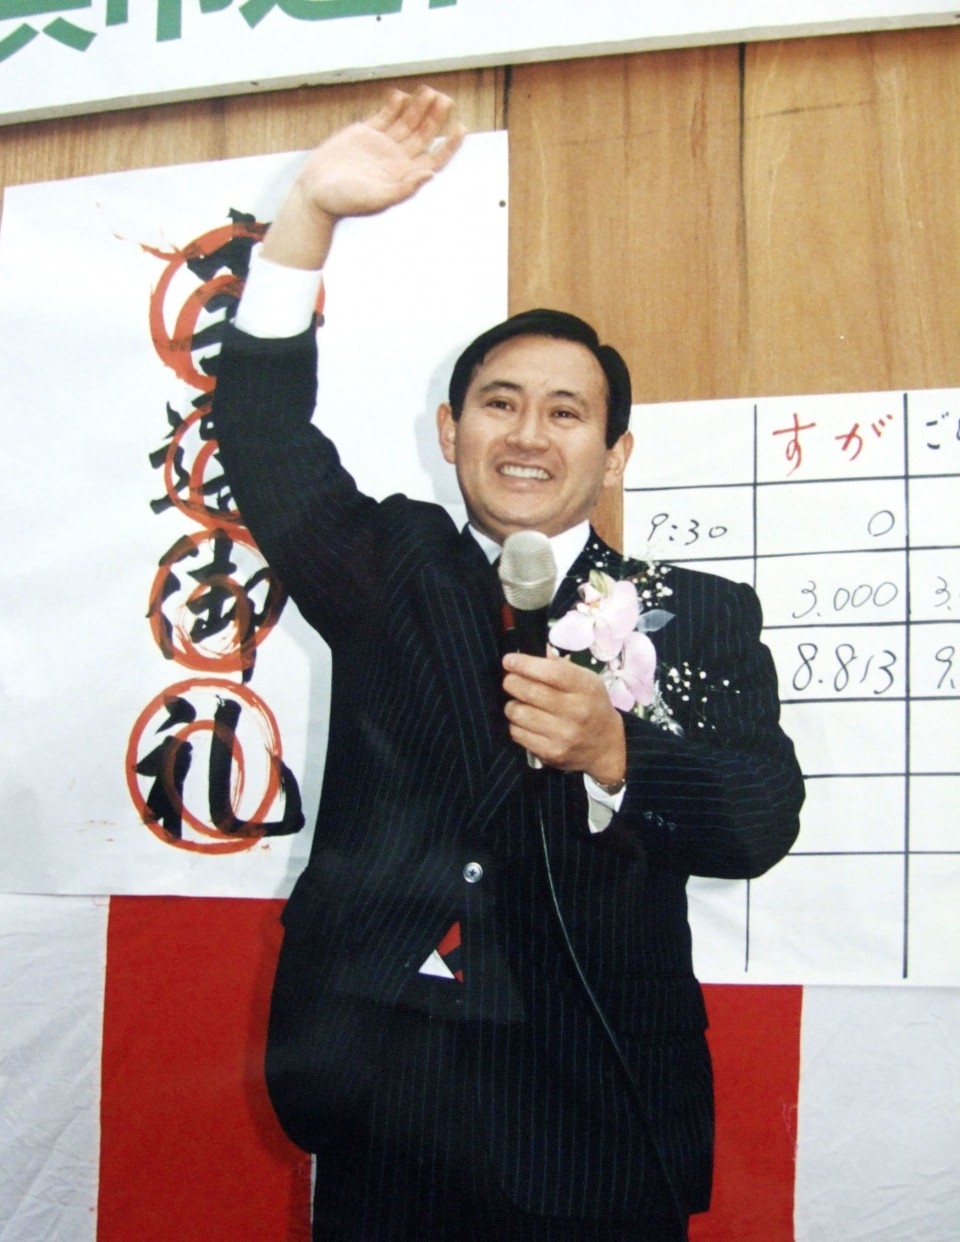 Ông Yoshihide Suga sau khi giành được một ghế trong Hội đồng thành phố Yokohama lần đầu tiên vào năm 1987 (Ảnh: Kyodo)